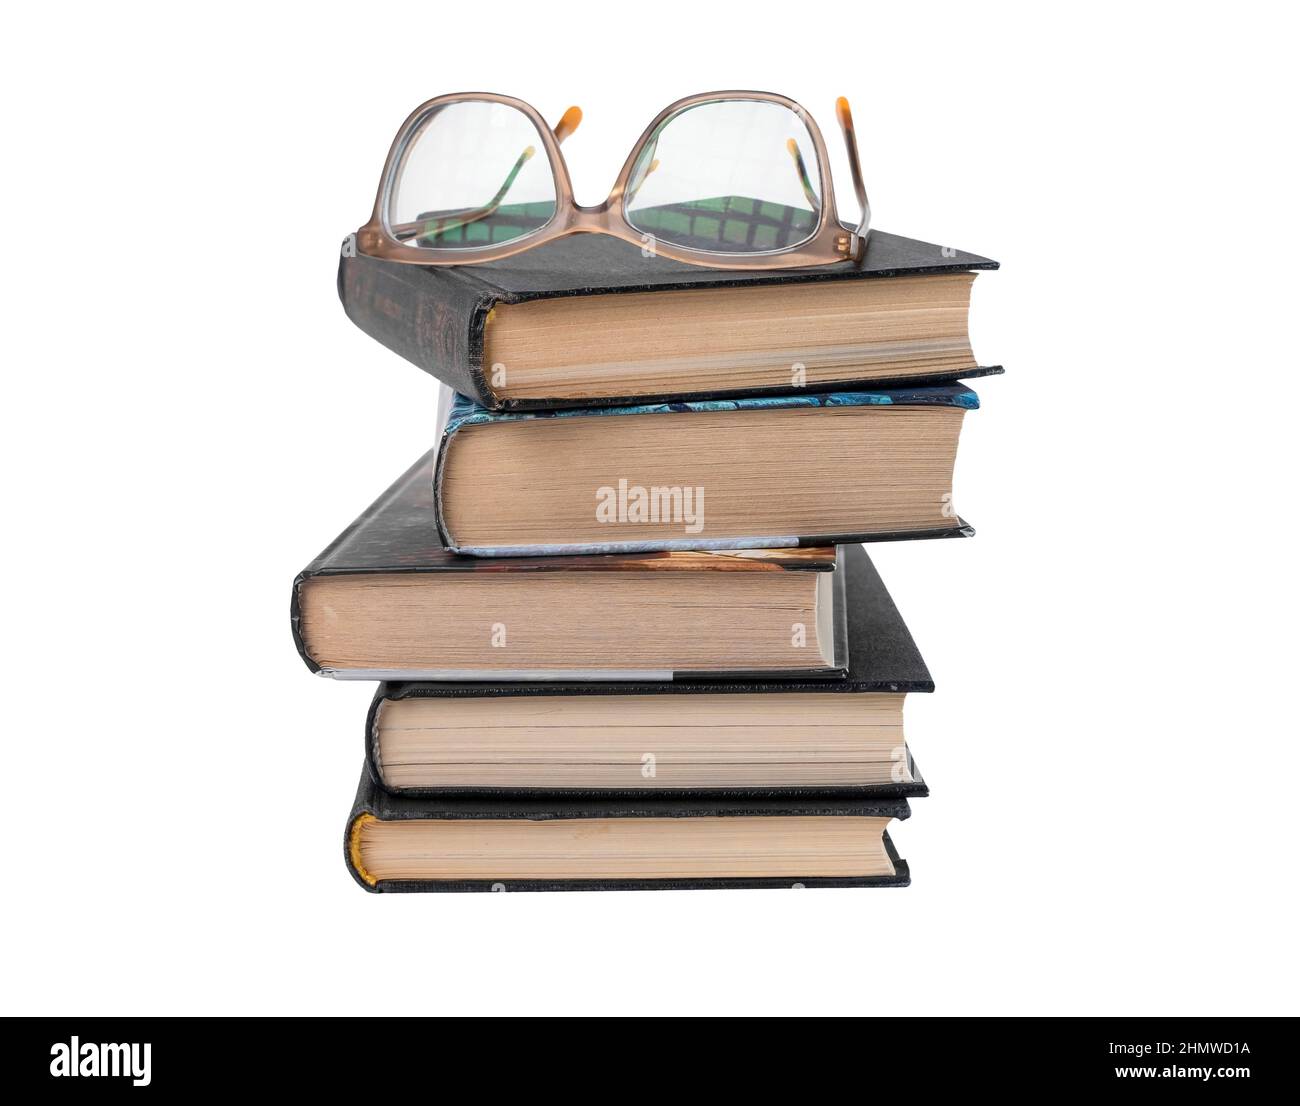 Les livres sont empilés avec des lunettes isolées sur fond blanc. Éducation et lecture concept de loisirs. Photo de haute qualité Banque D'Images